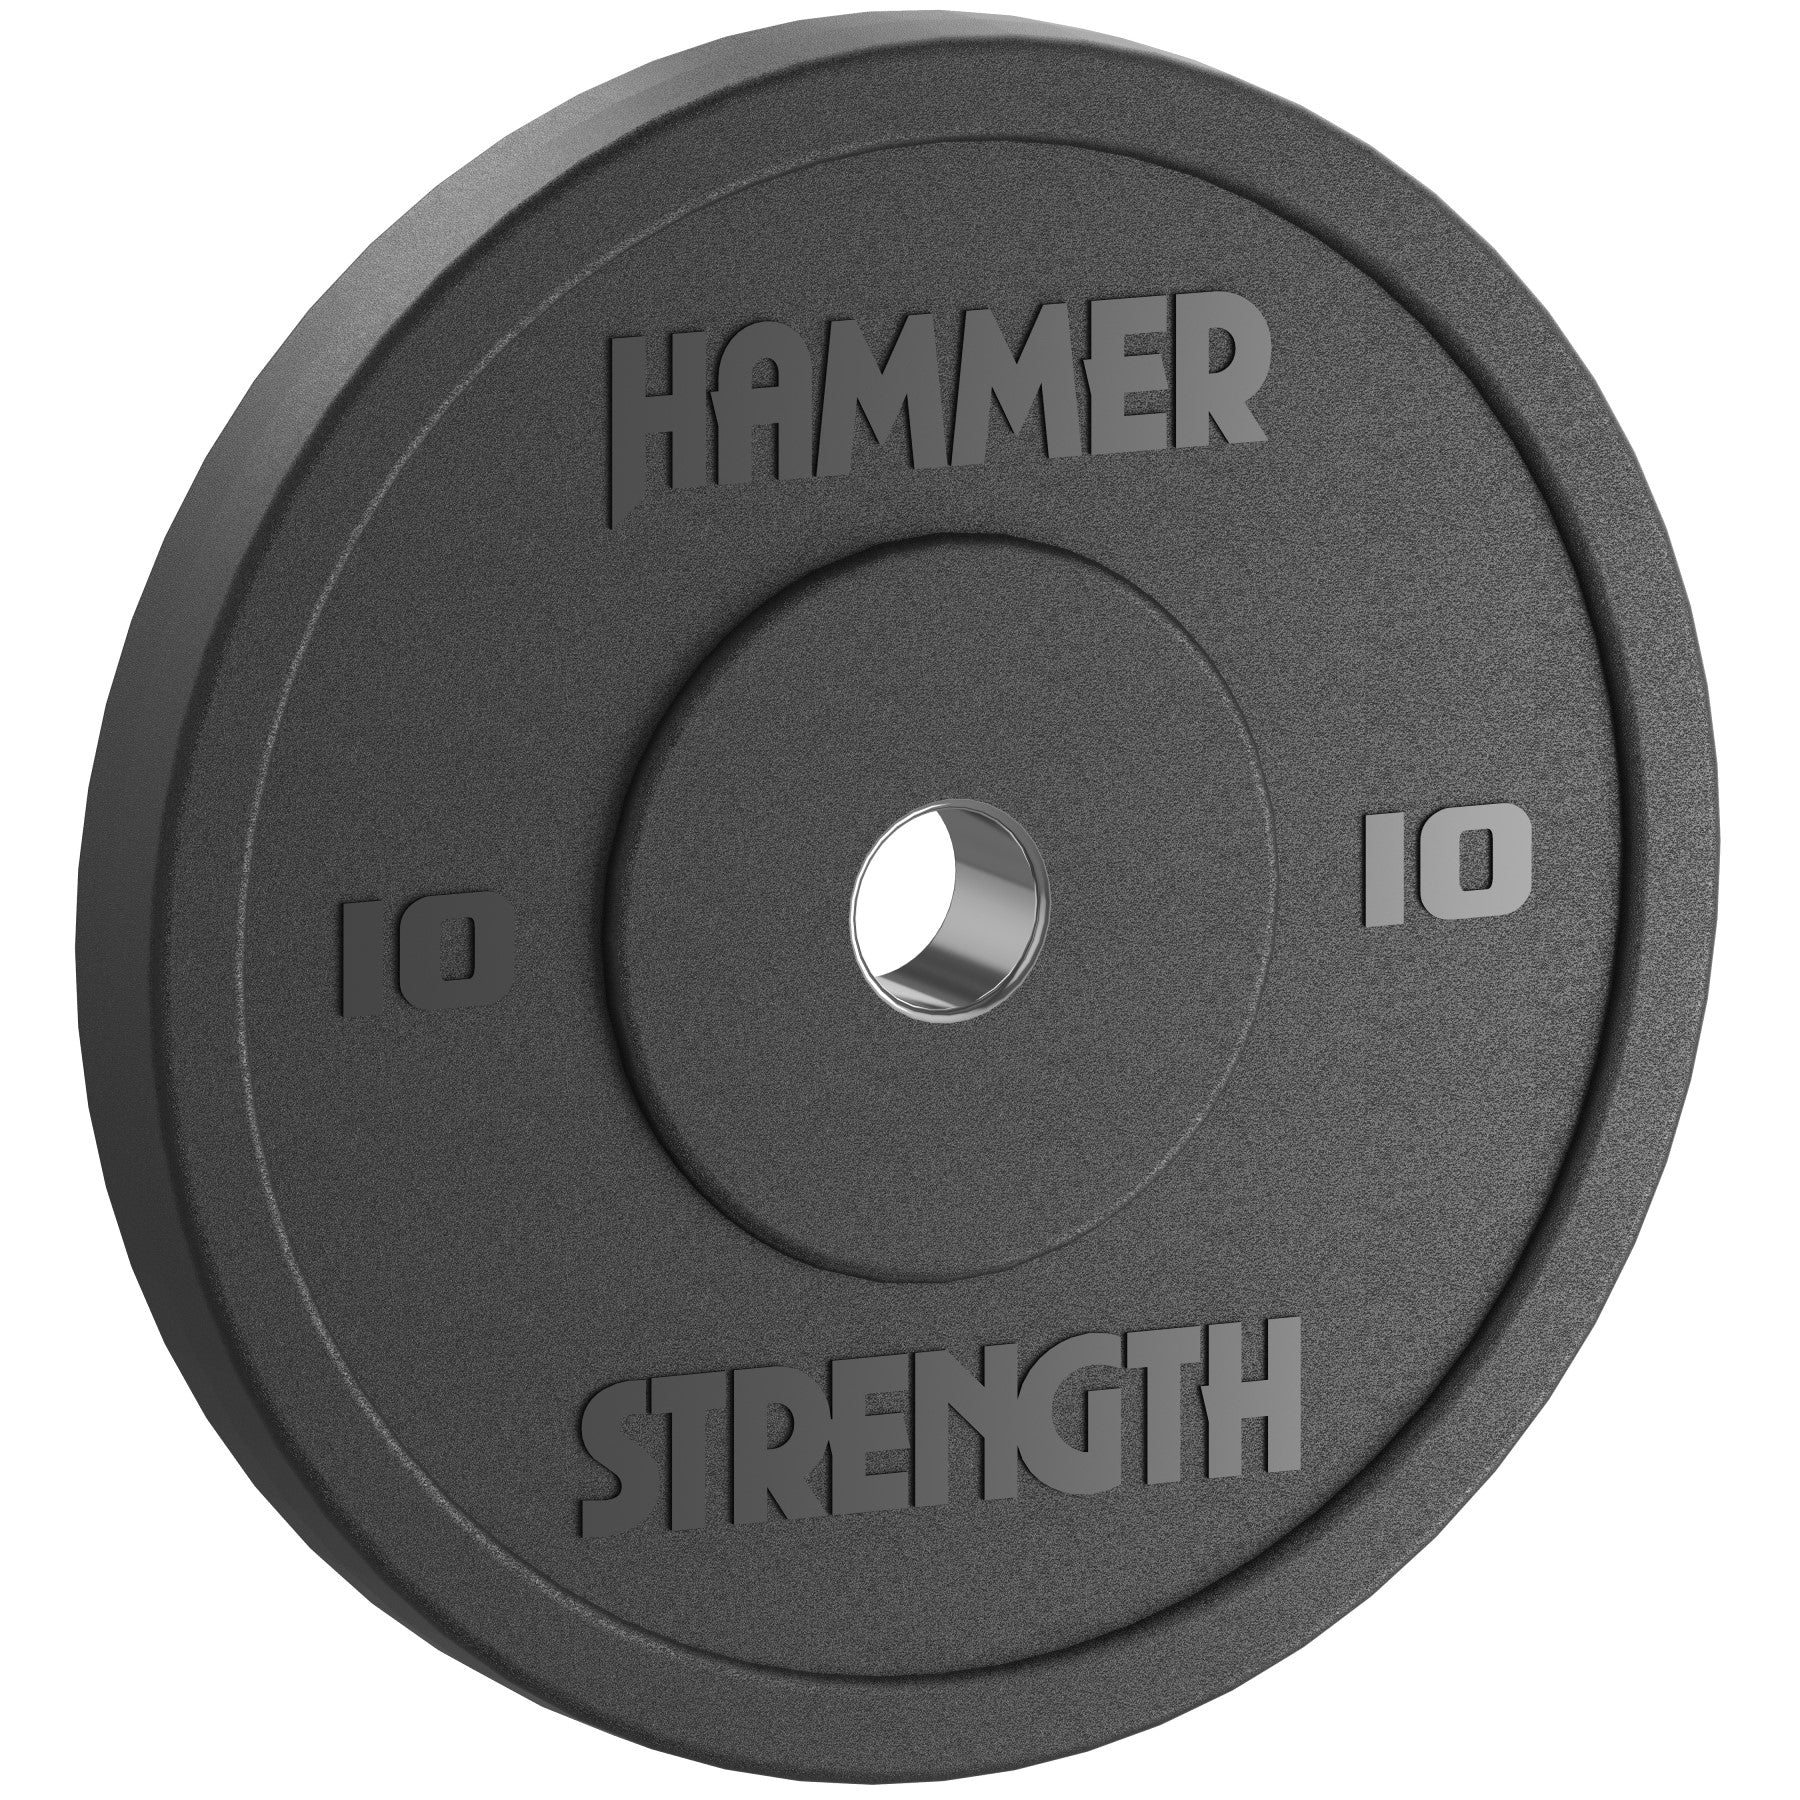 Hammer Strength Standard Rubber Bumper - 10 lbs.